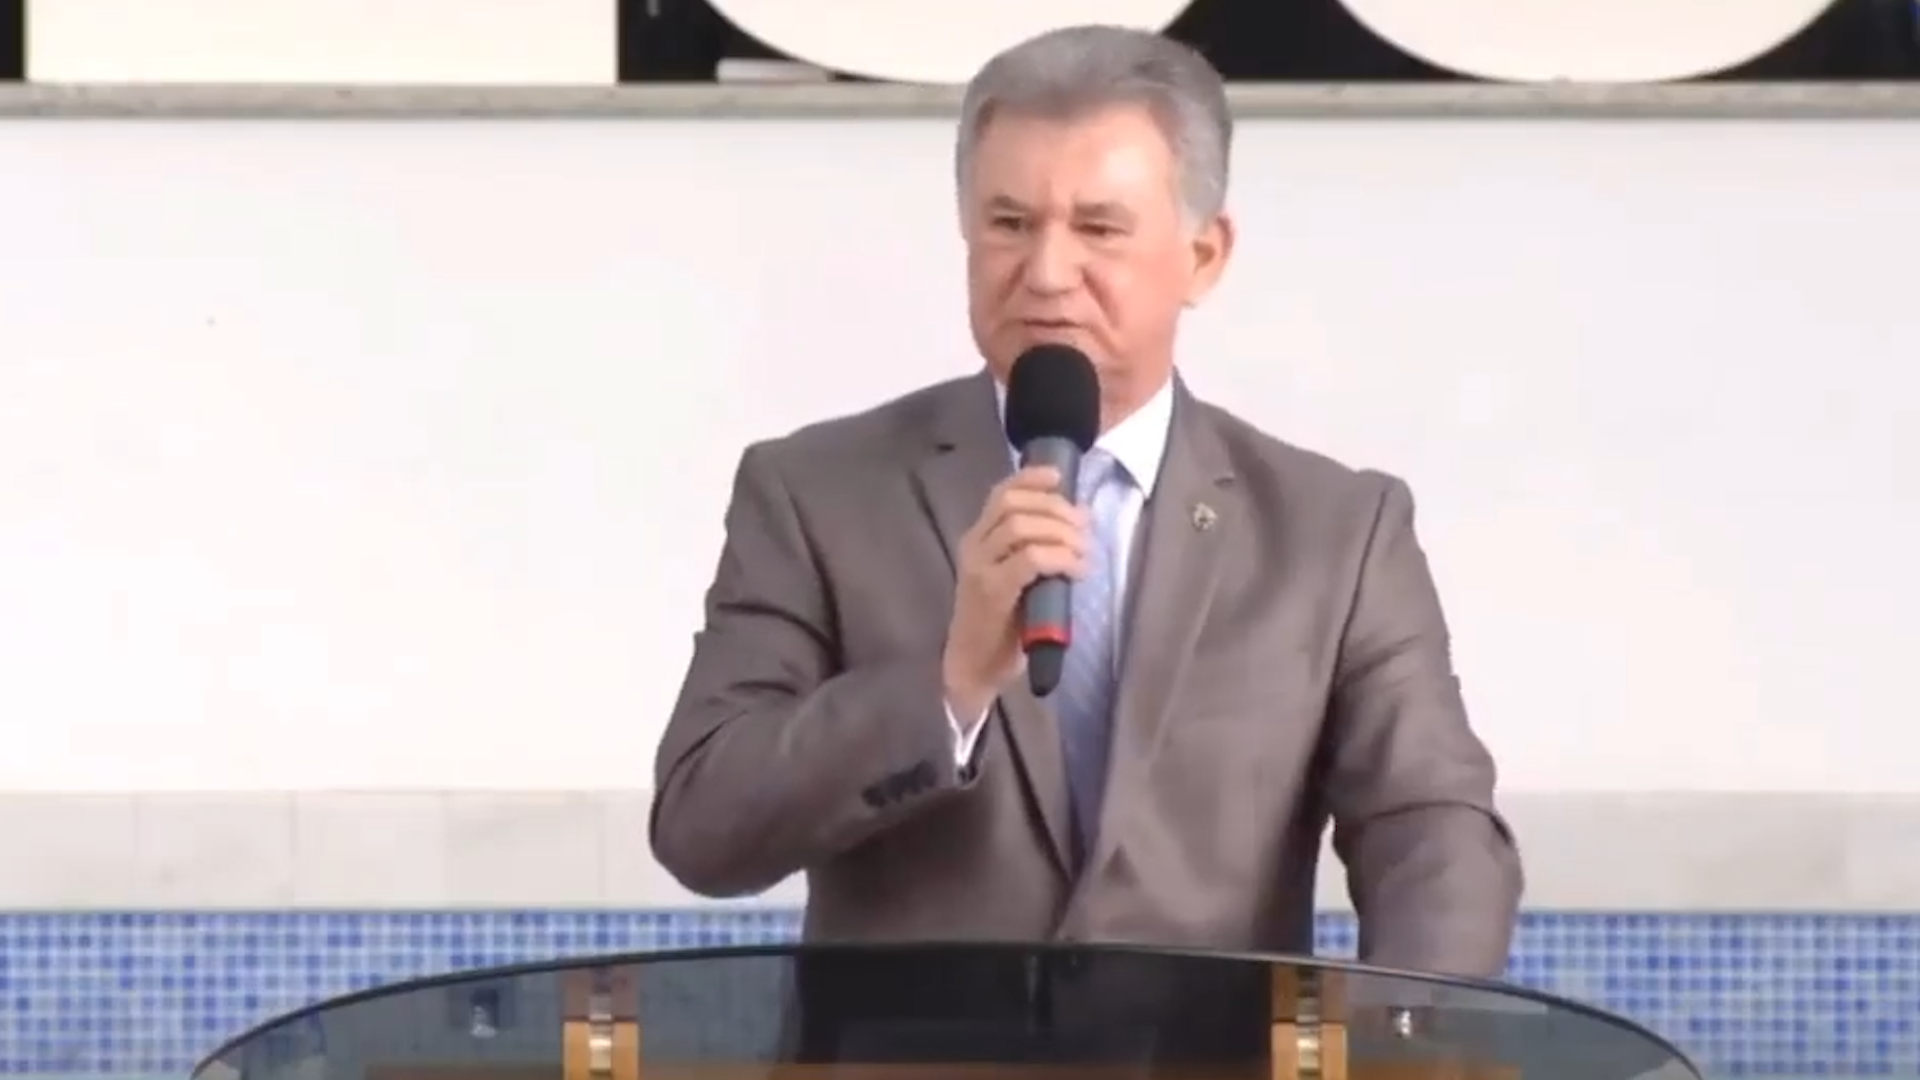 VÍDEO: Pastor Manoel Ferreira 'requebra' em cima de púlpito e